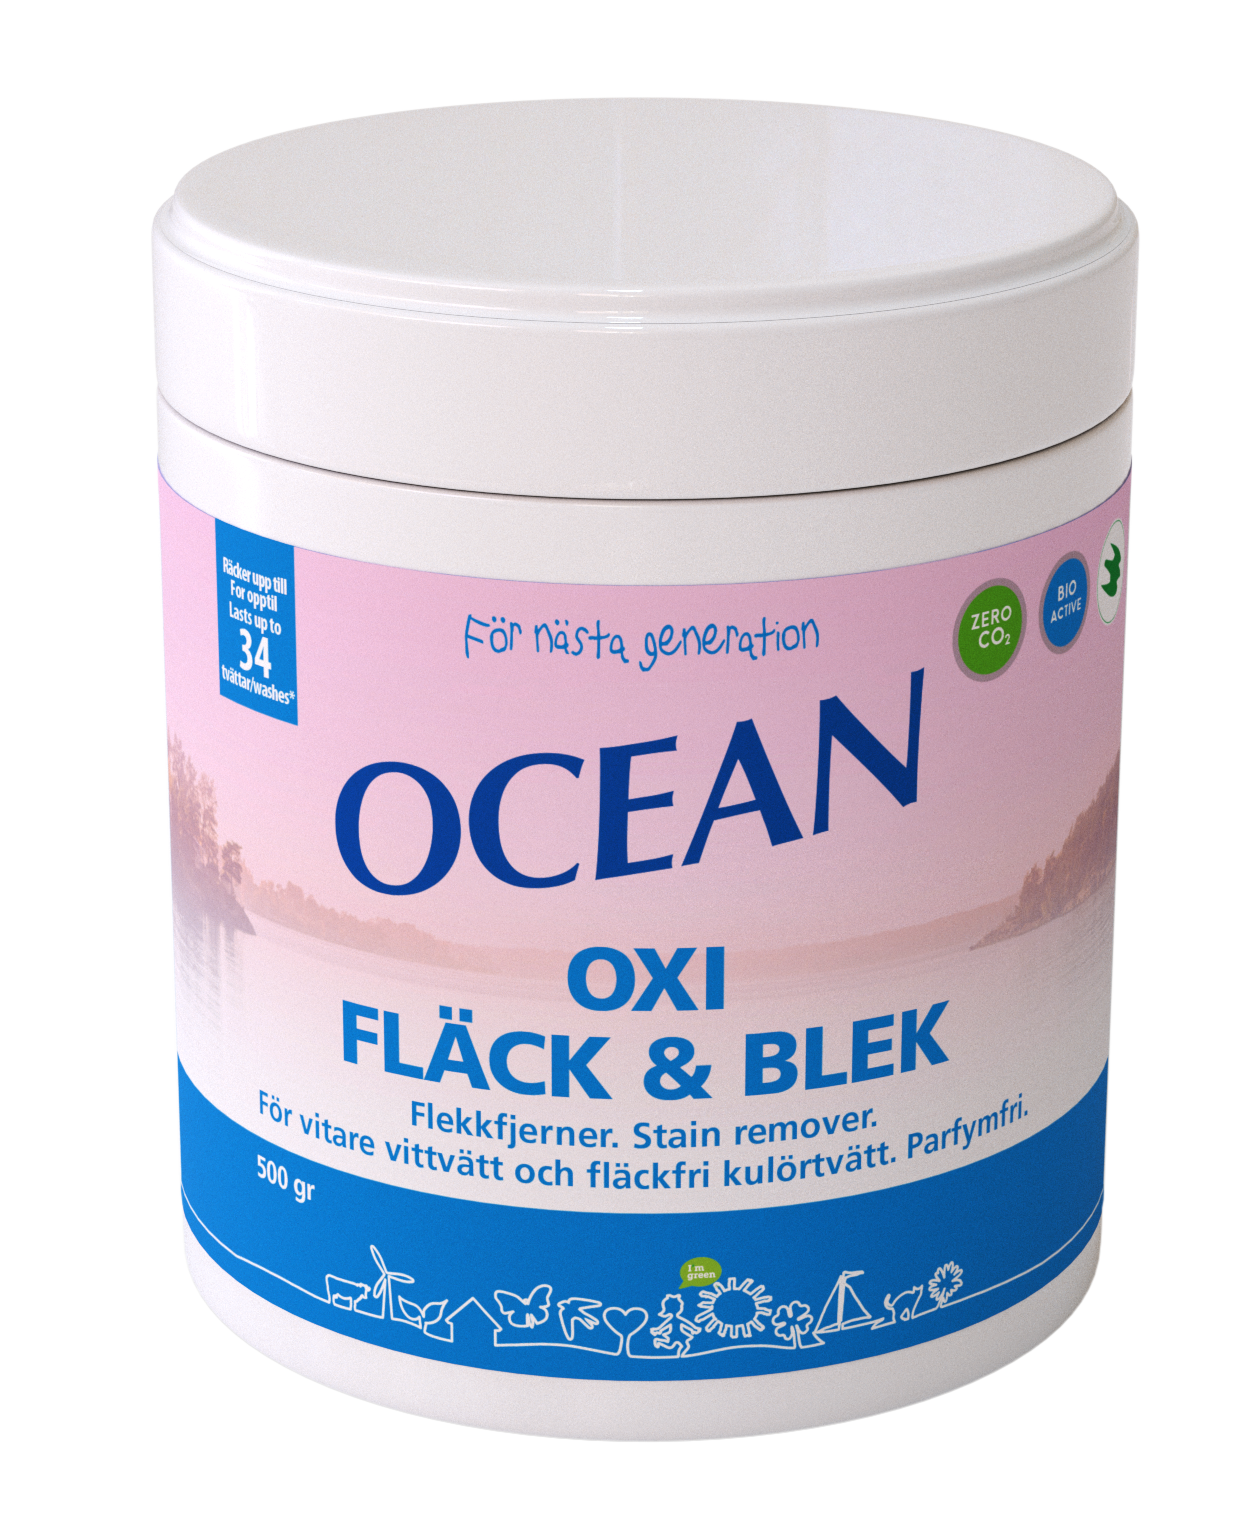 OCEAN Oxi Fläck & Blek